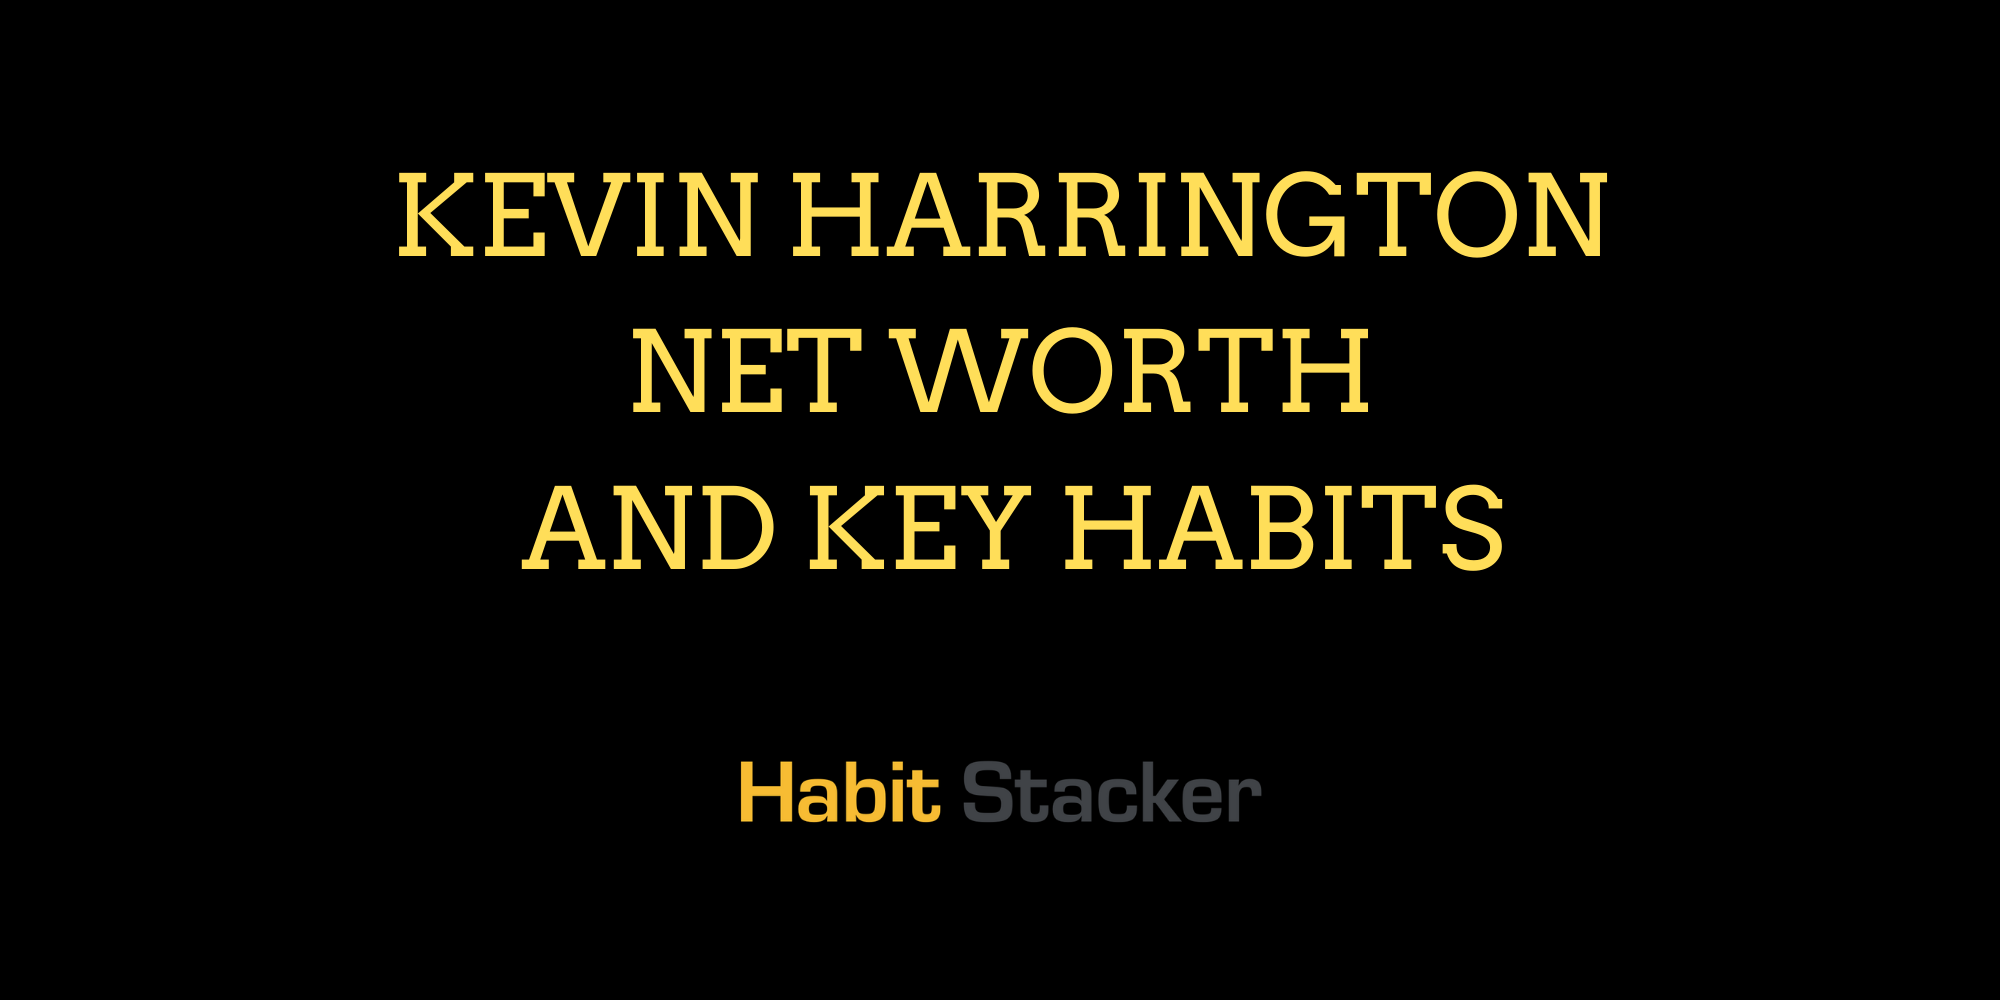 Kevin Harrington Net Worth and Key Habits